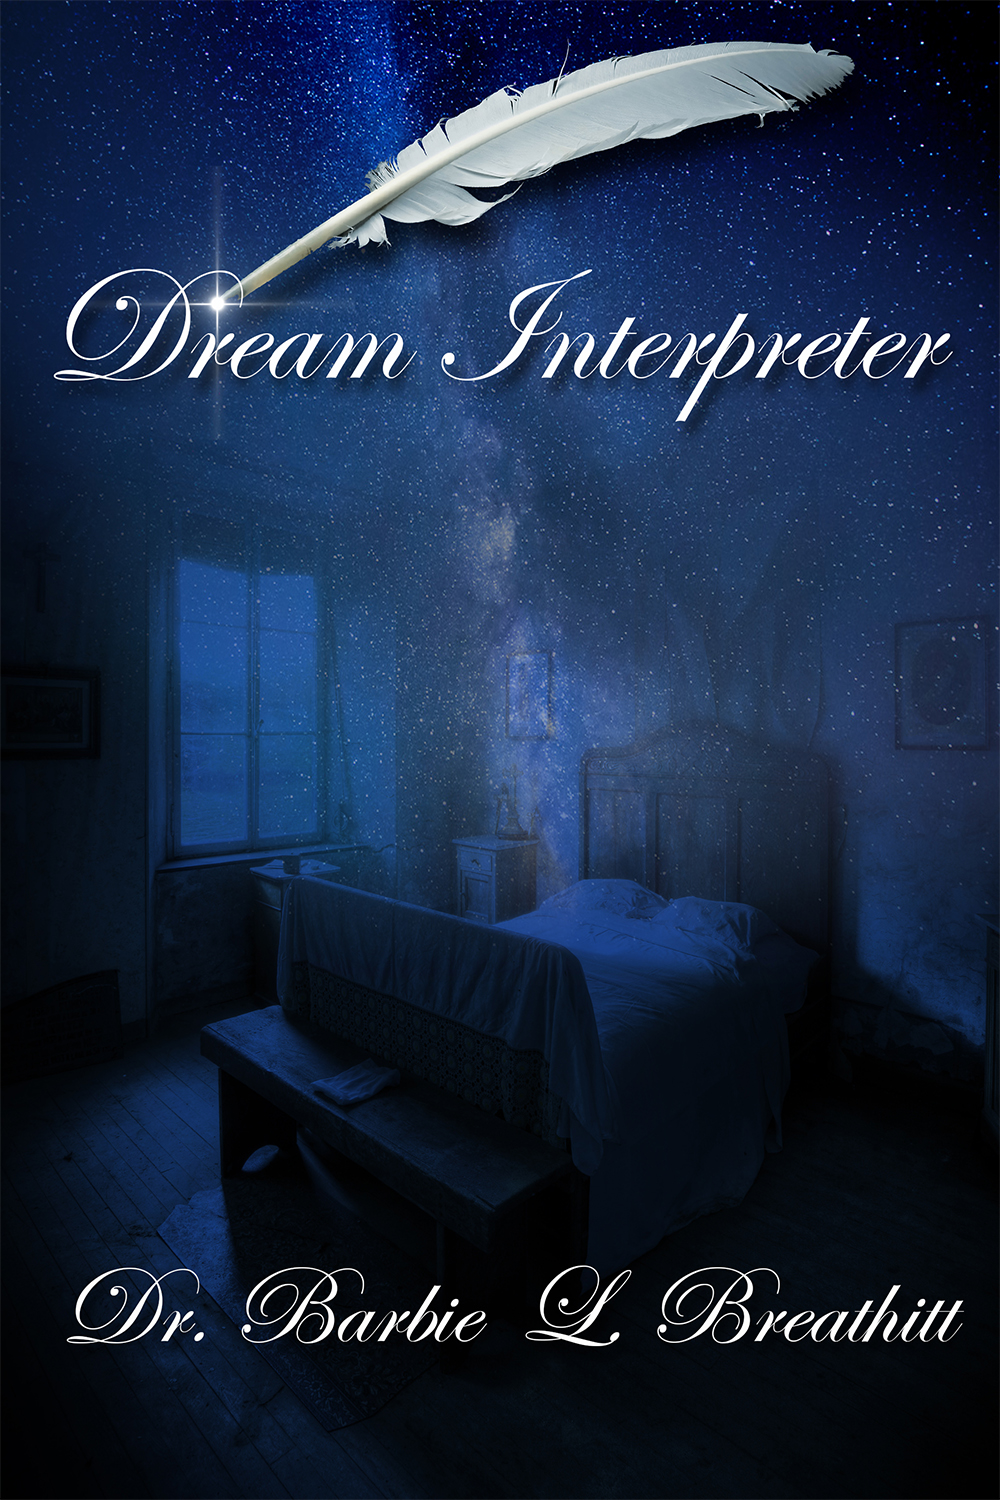 Dream+Interpreter+web.jpg